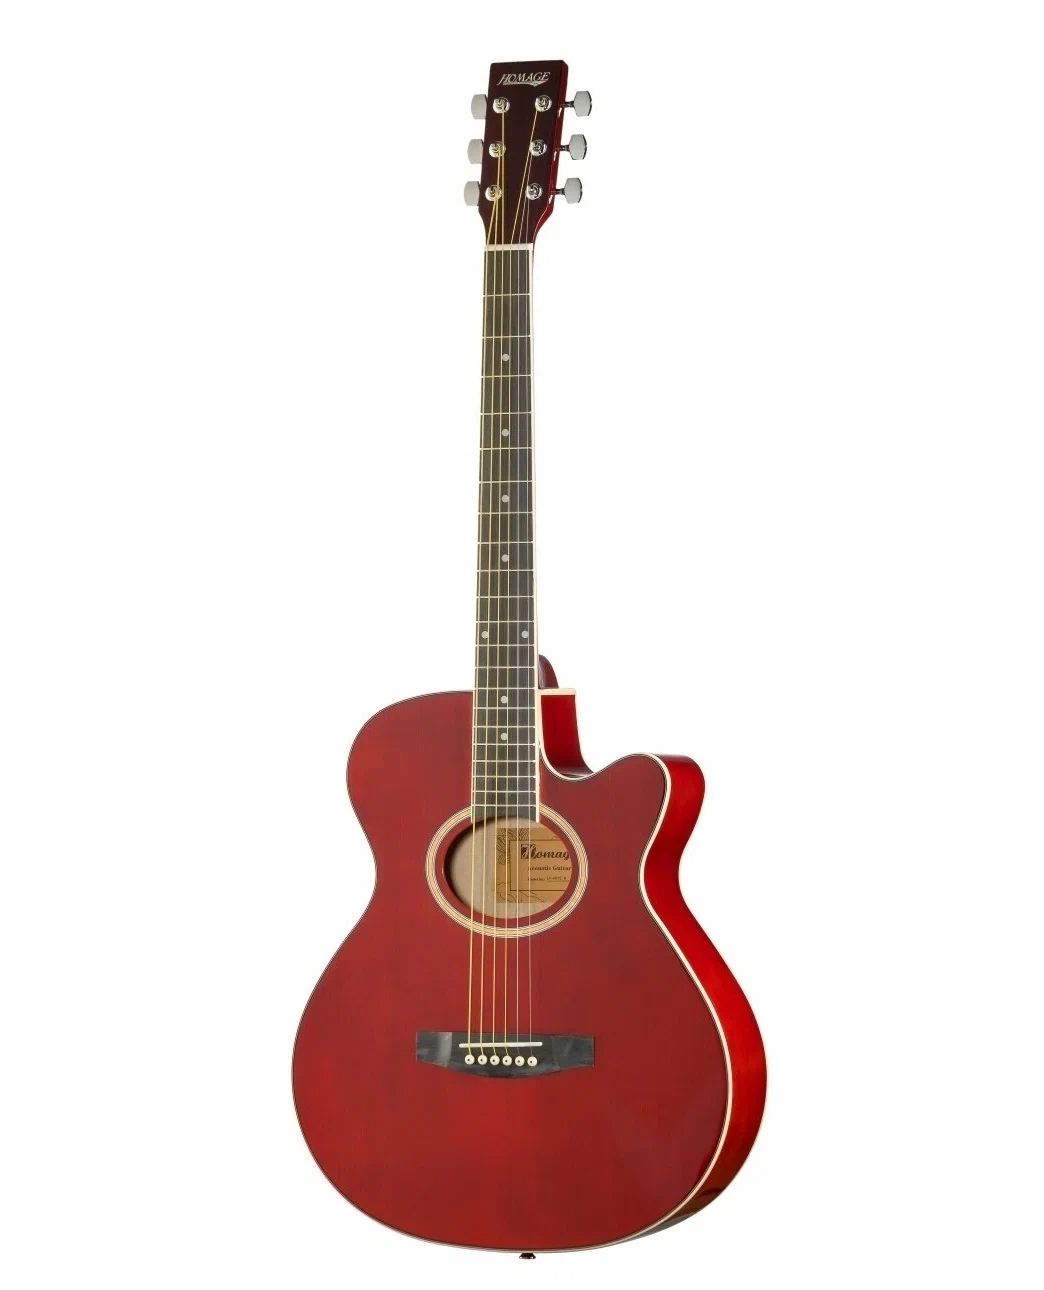 Акустические гитары Homage LF-401C-R гитара деревянная soundhole sound hole обложка блок обратная связь буфер mahogany wood для eq акустические гитары фолк